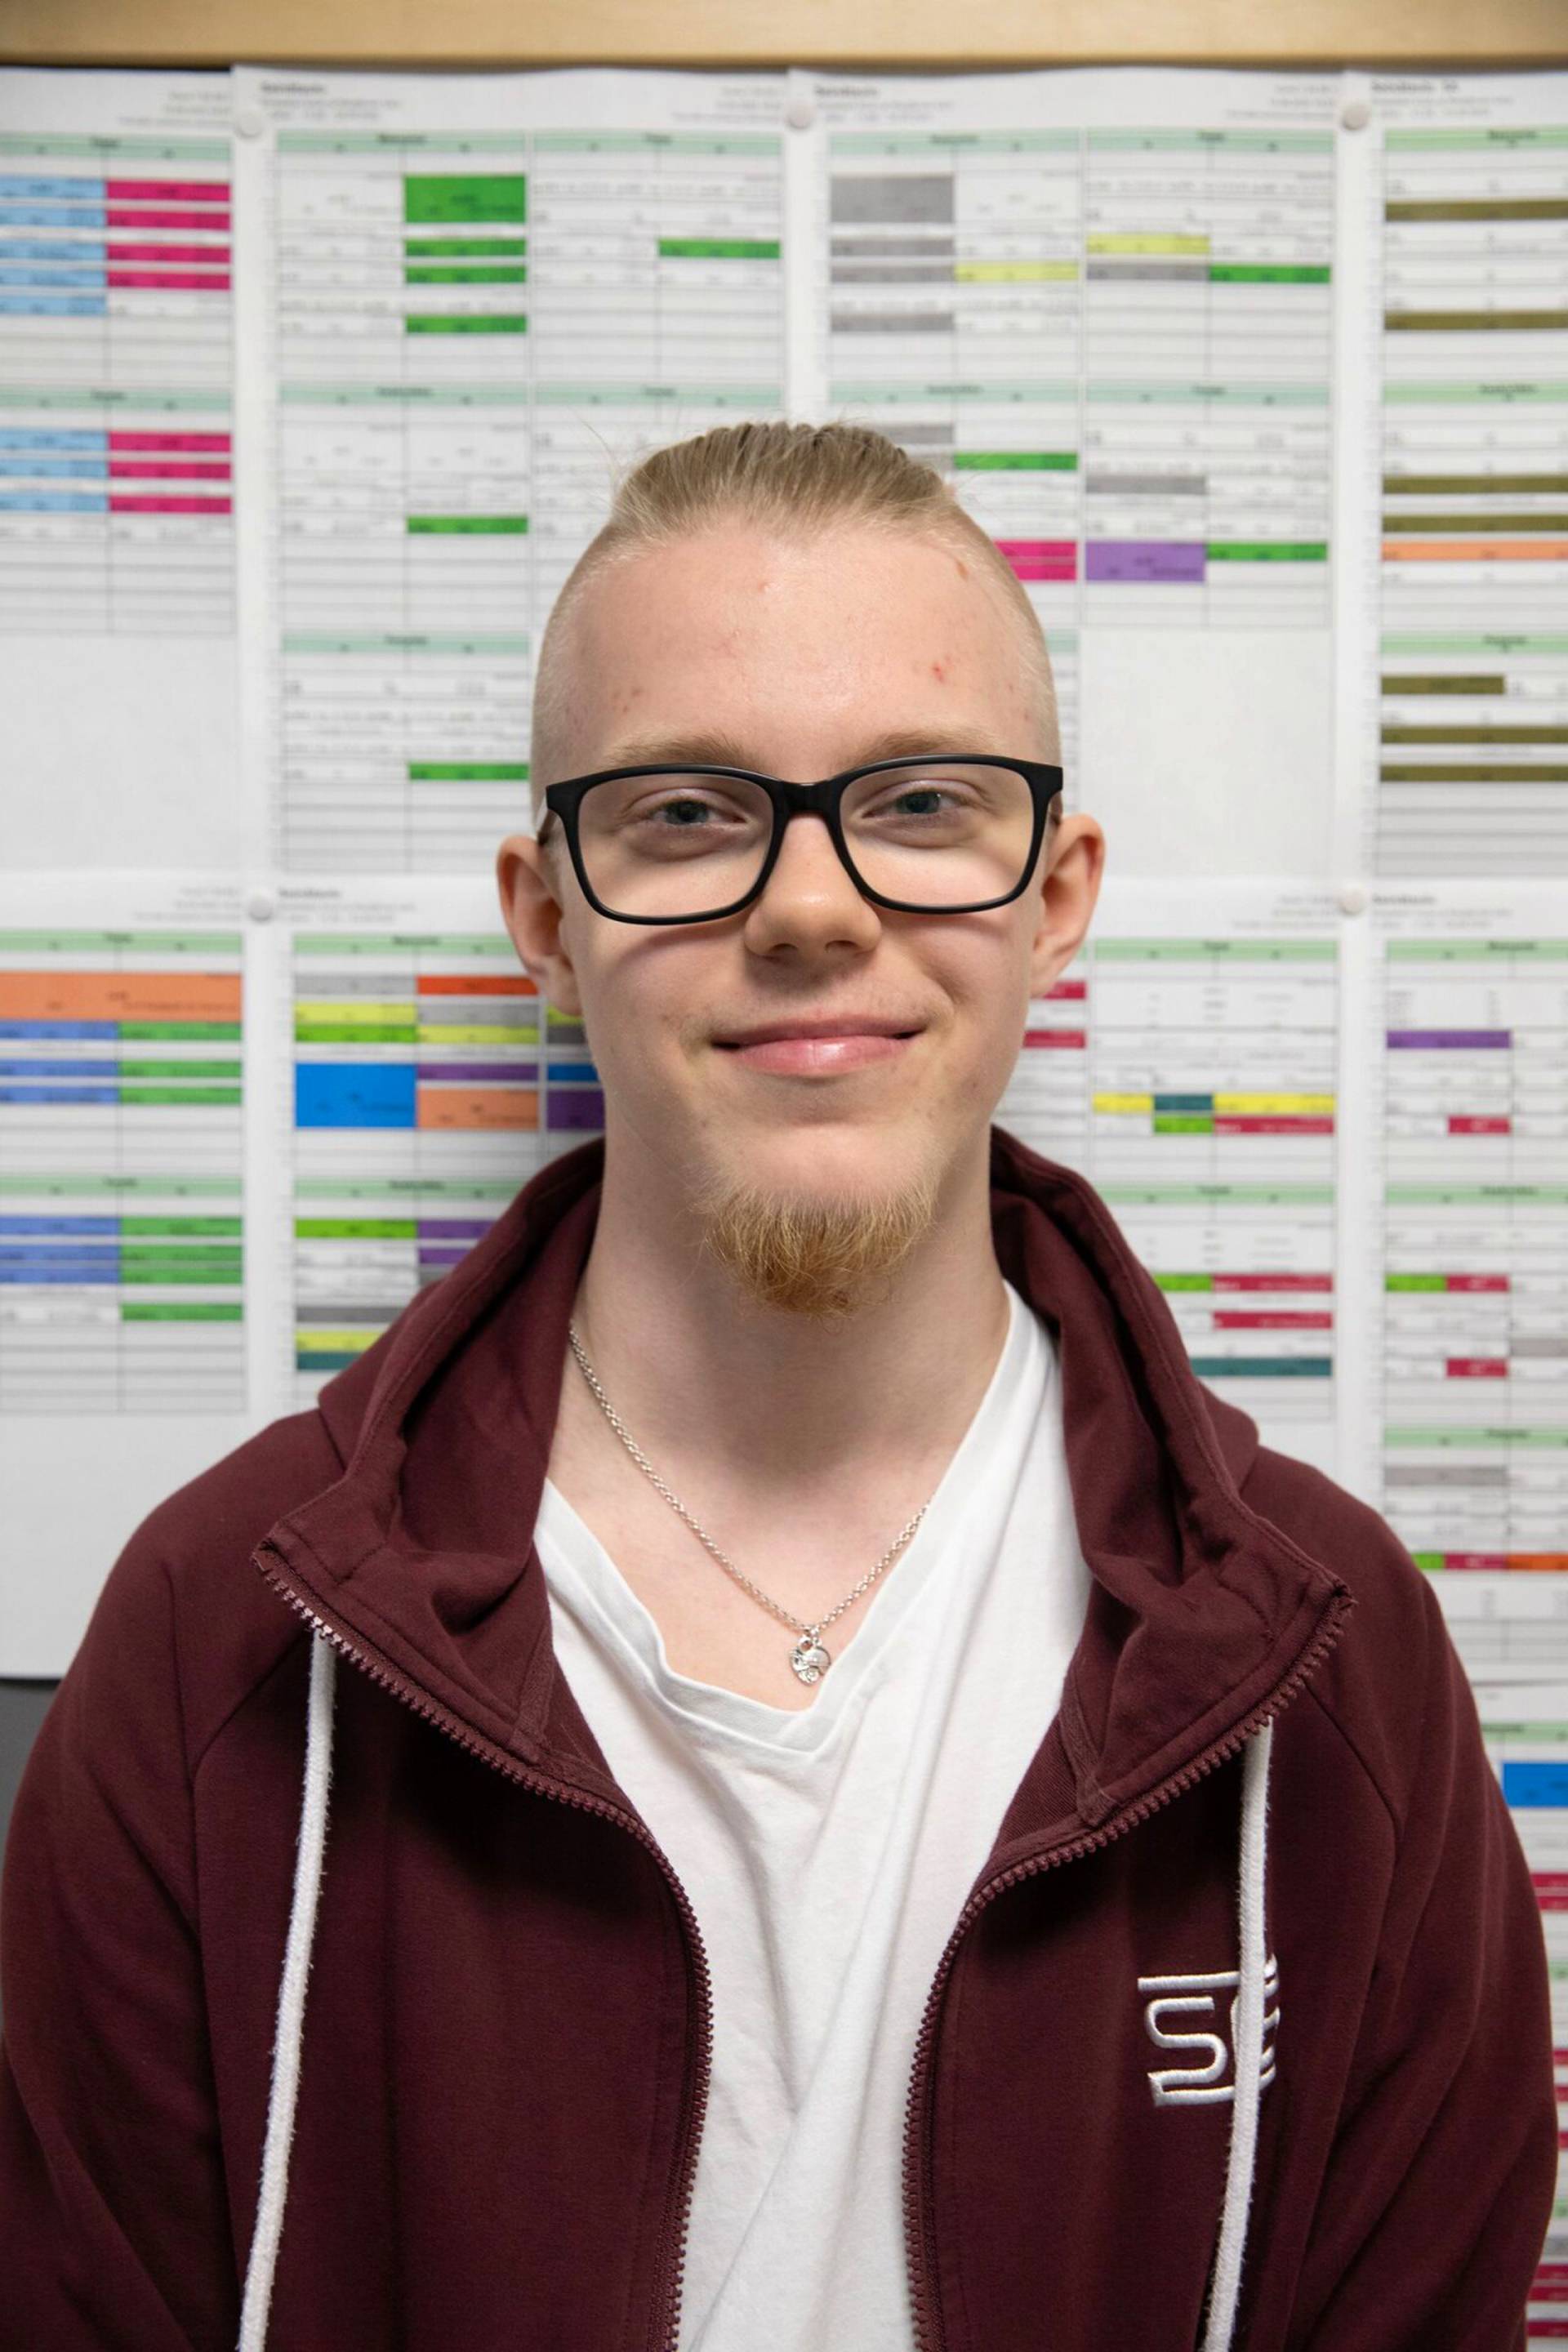 Jesse Mutikainen valmistui tänä keväänä Rautjärven lukiosta. Hänen lisäkseen ylioppilaita oli kolme. Mutikainen pitää kotikunnastaan, mutta aikoo muuttaa opintojen perässä Espooseen.